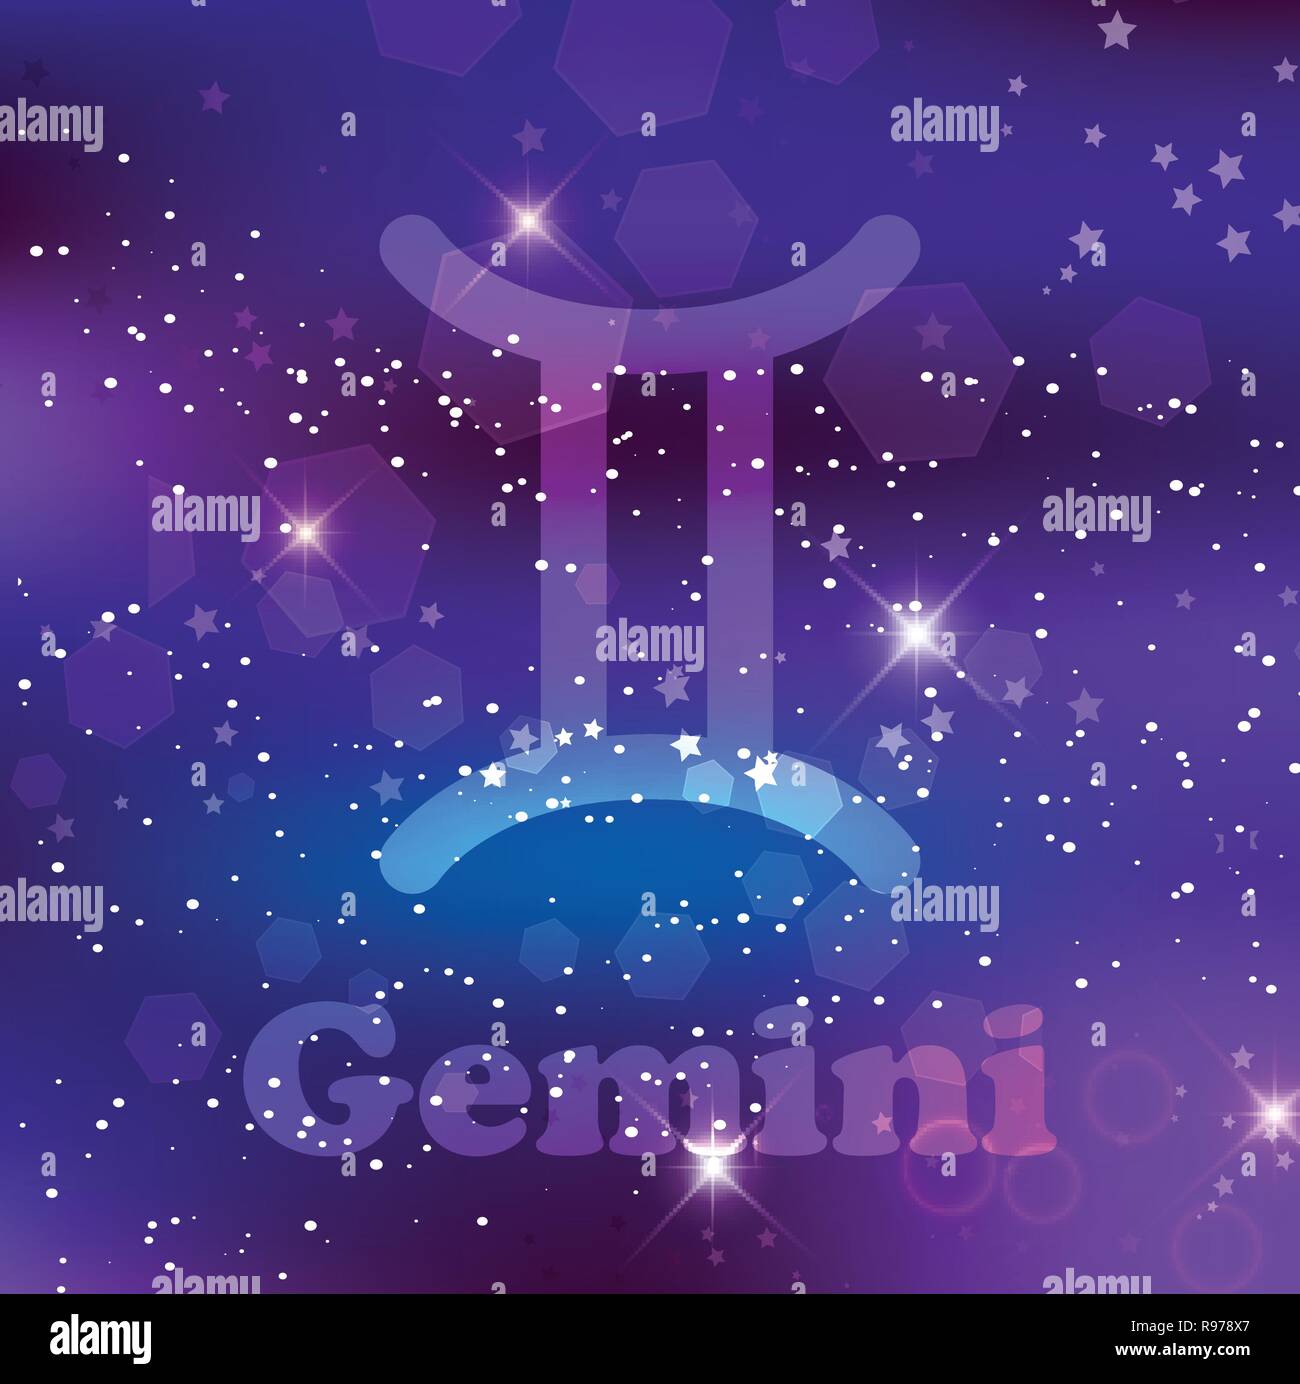 Gemini segno zodiacale e costellazione sul cosmica sfondo viola con stelle luccicanti e nebulosa. Illustrazione Vettoriale, banner, poster, gemelli card. Spazio Illustrazione Vettoriale